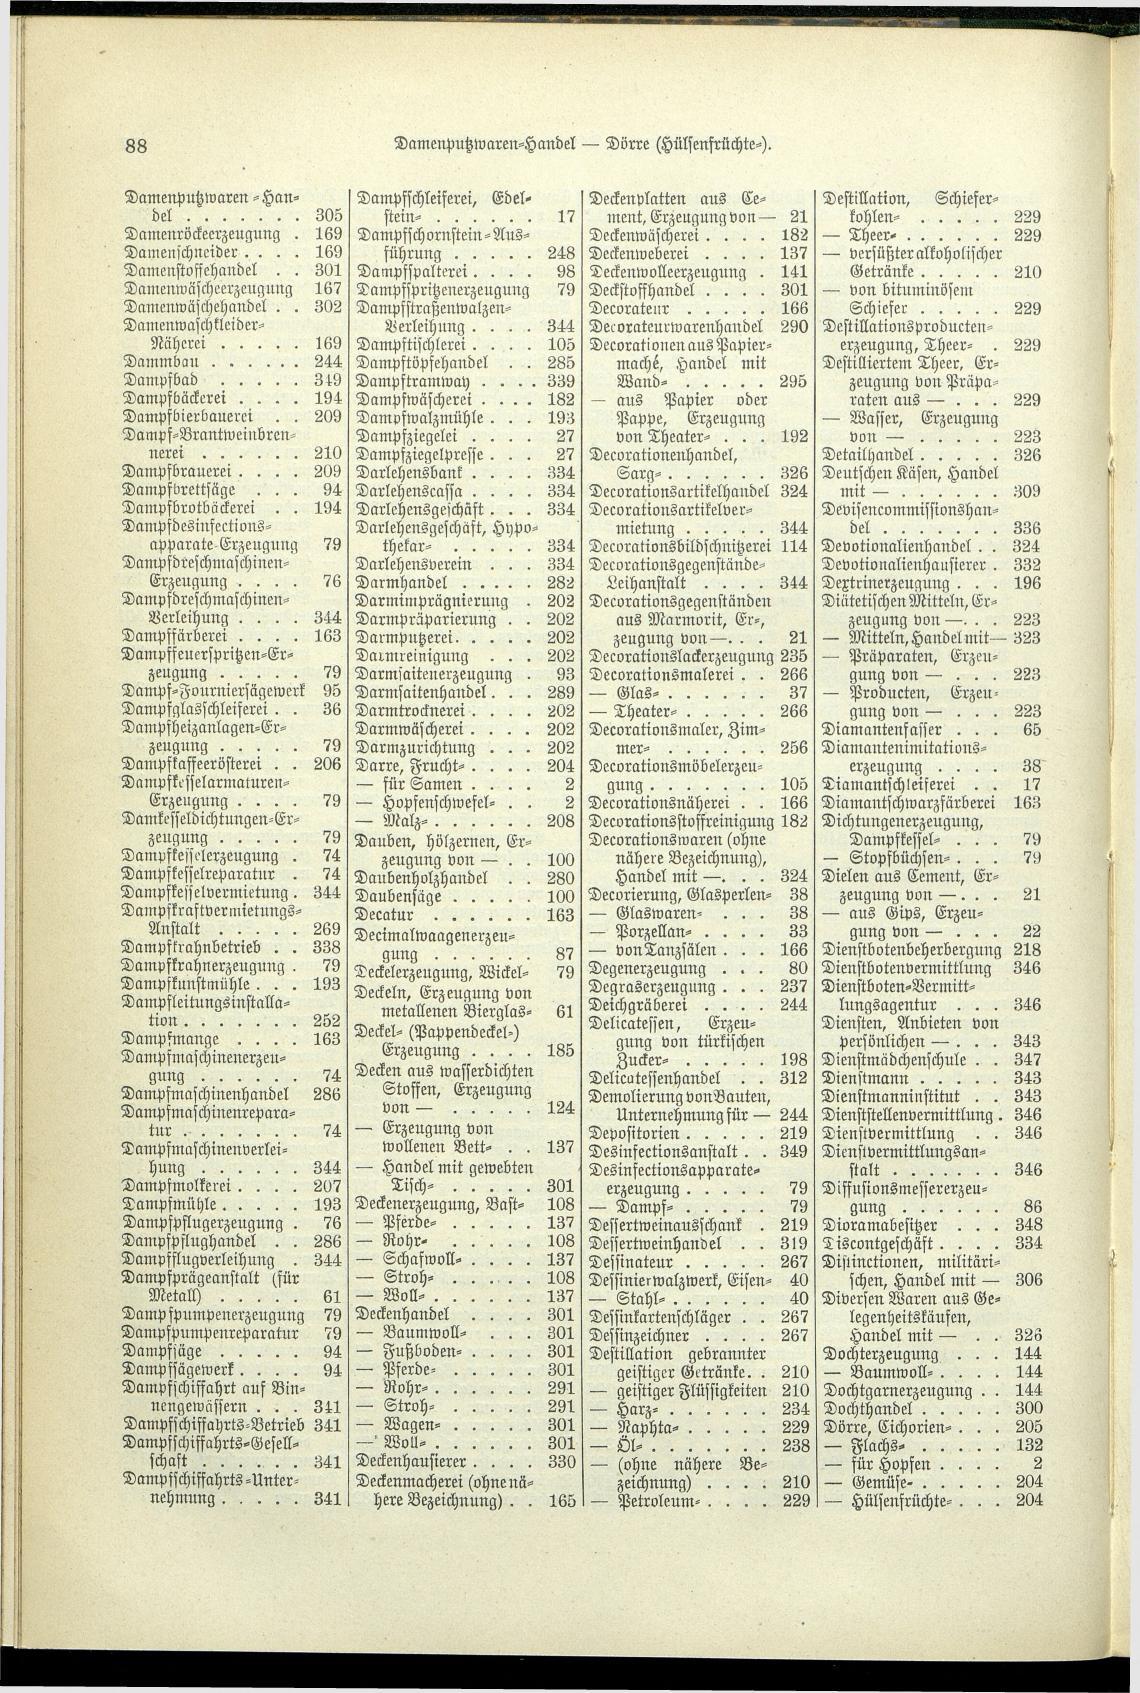 Verzeichnis der Gewerbe der im Reichsrathe vertretenen Königreiche und Länder 1900 - Page 92